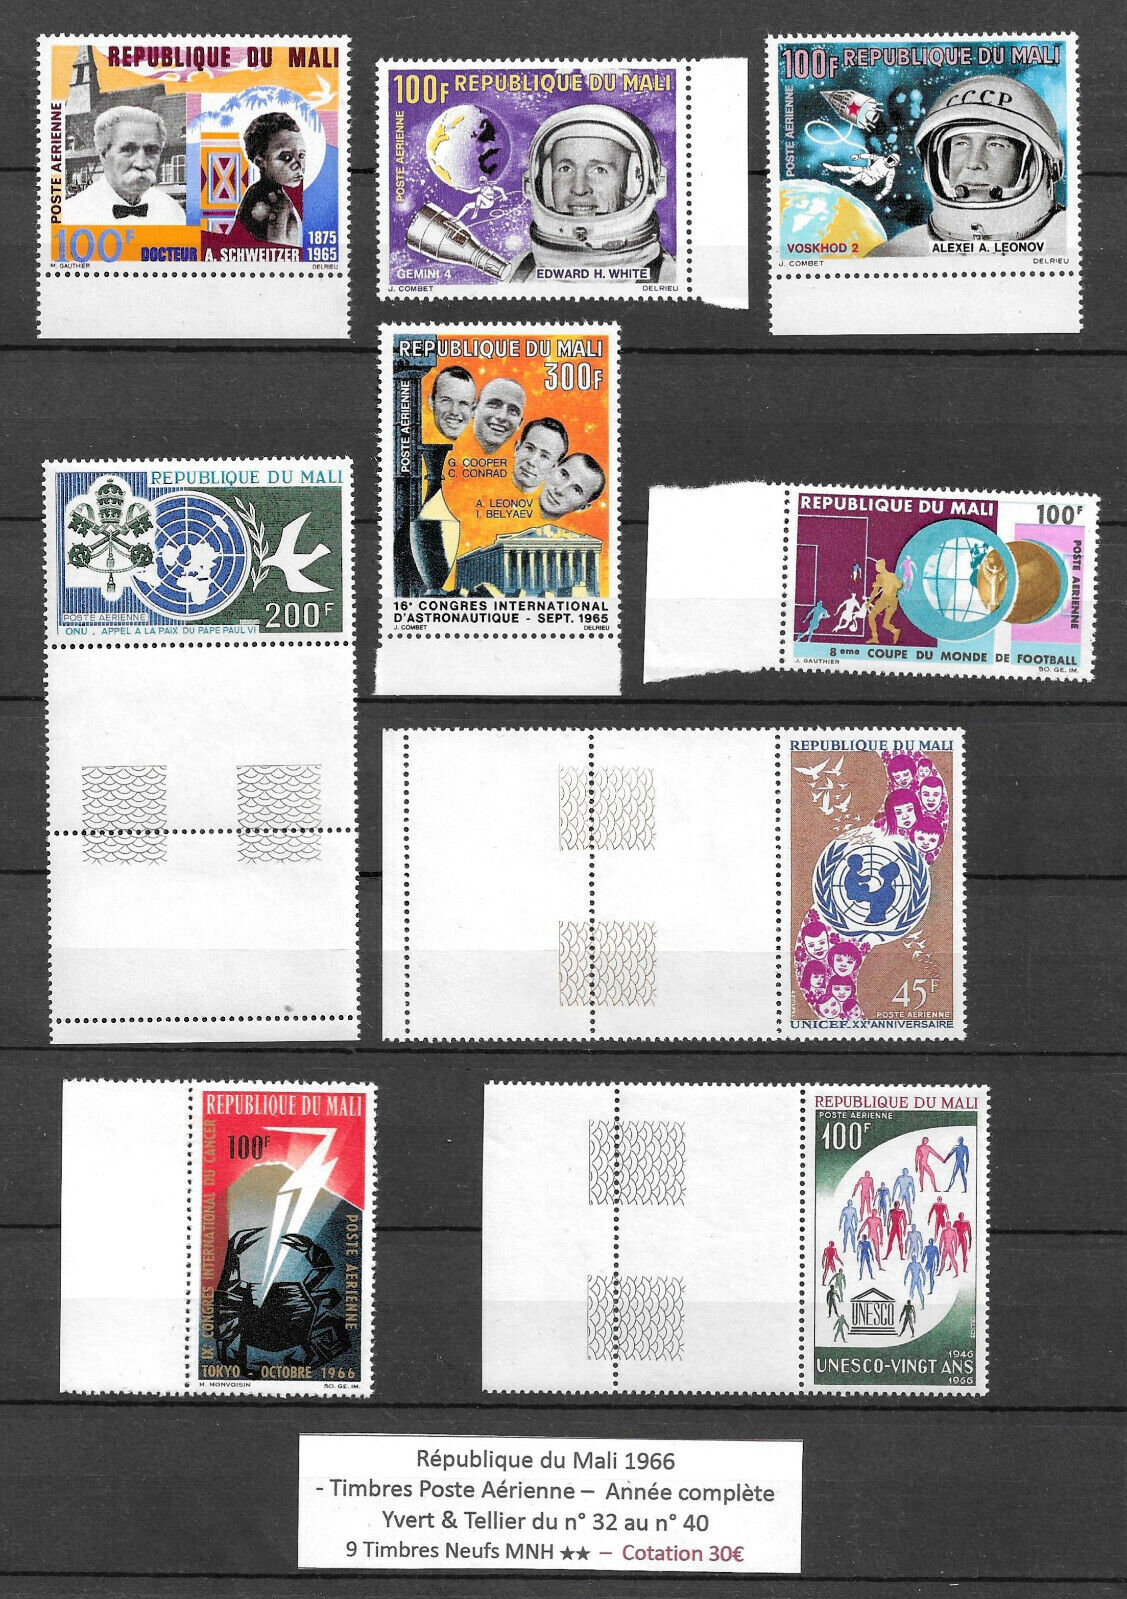 MALI 1966 - République du MALI (9 Air Mail Stamps) MNH ** Comple